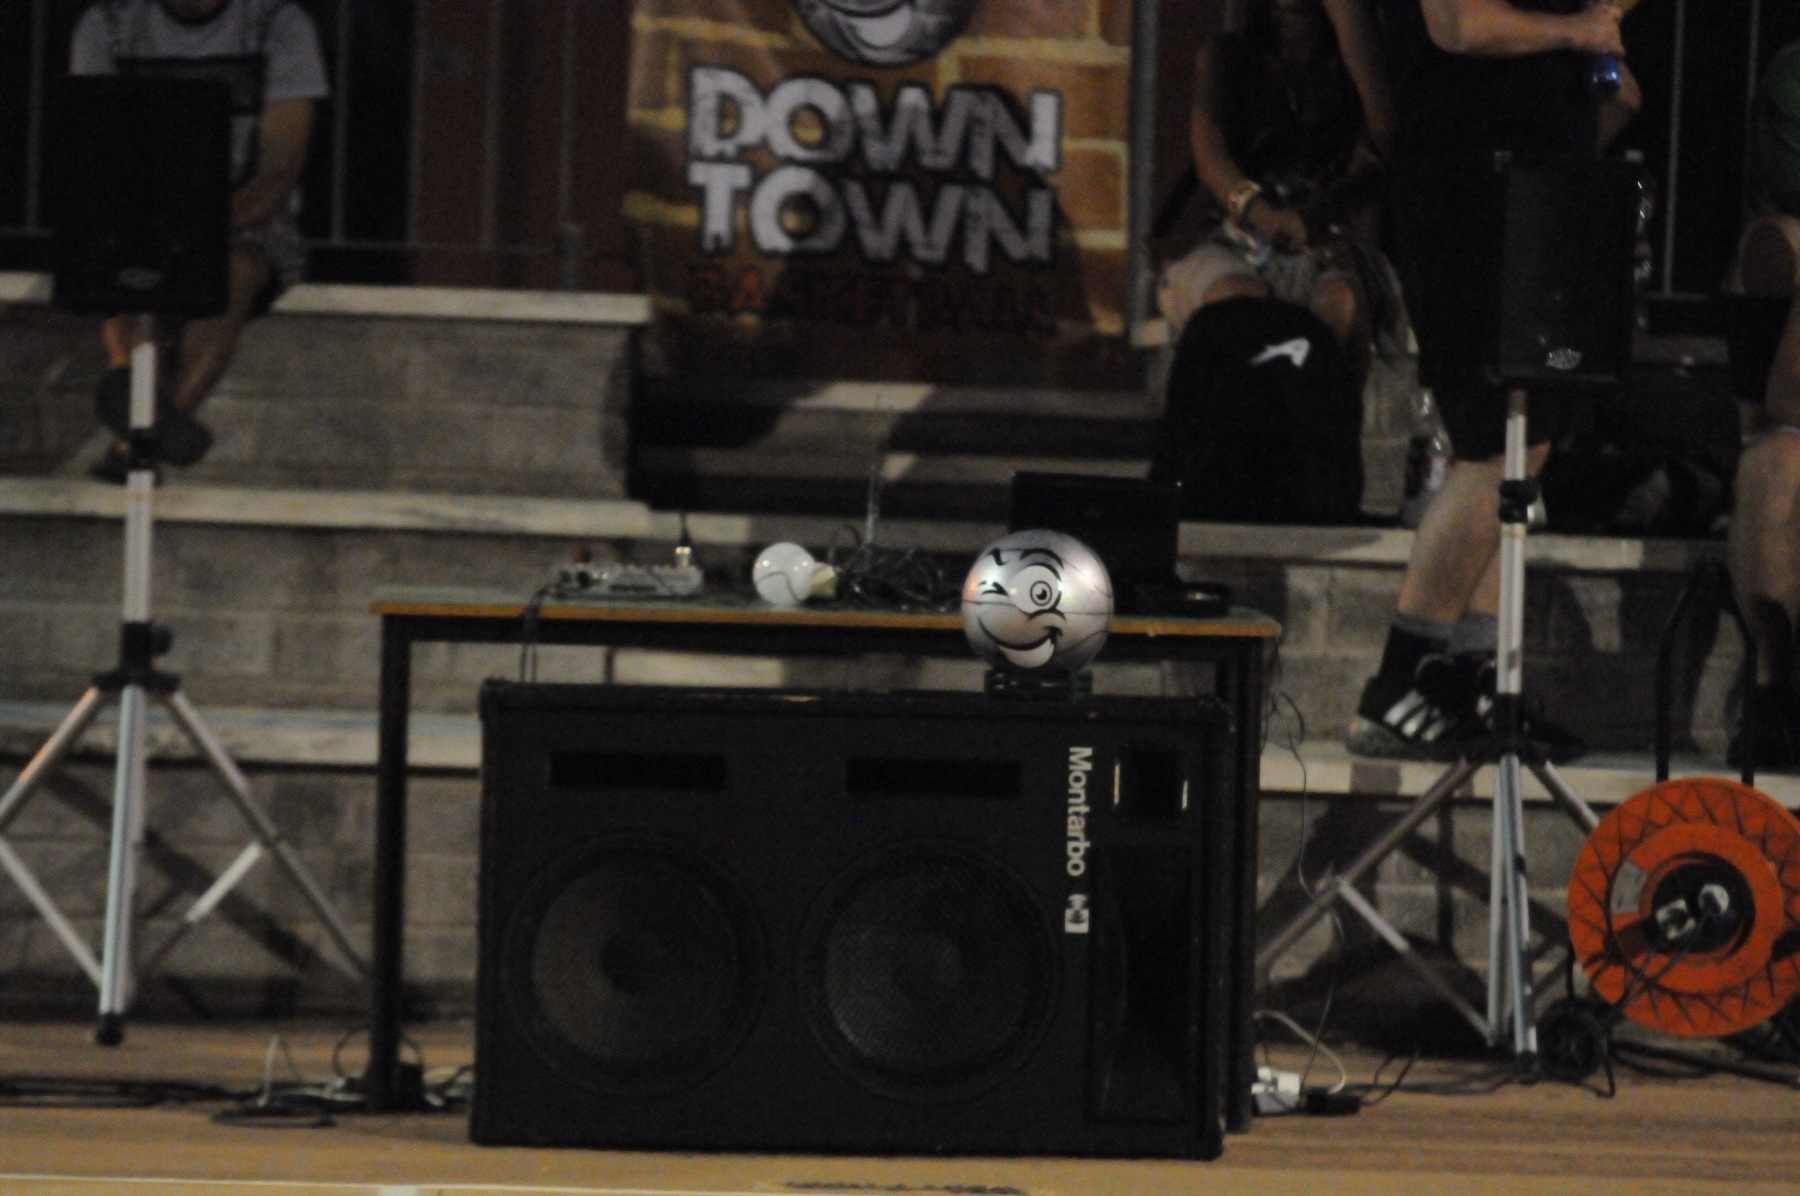 2012-07-19-DownTownBasket-329